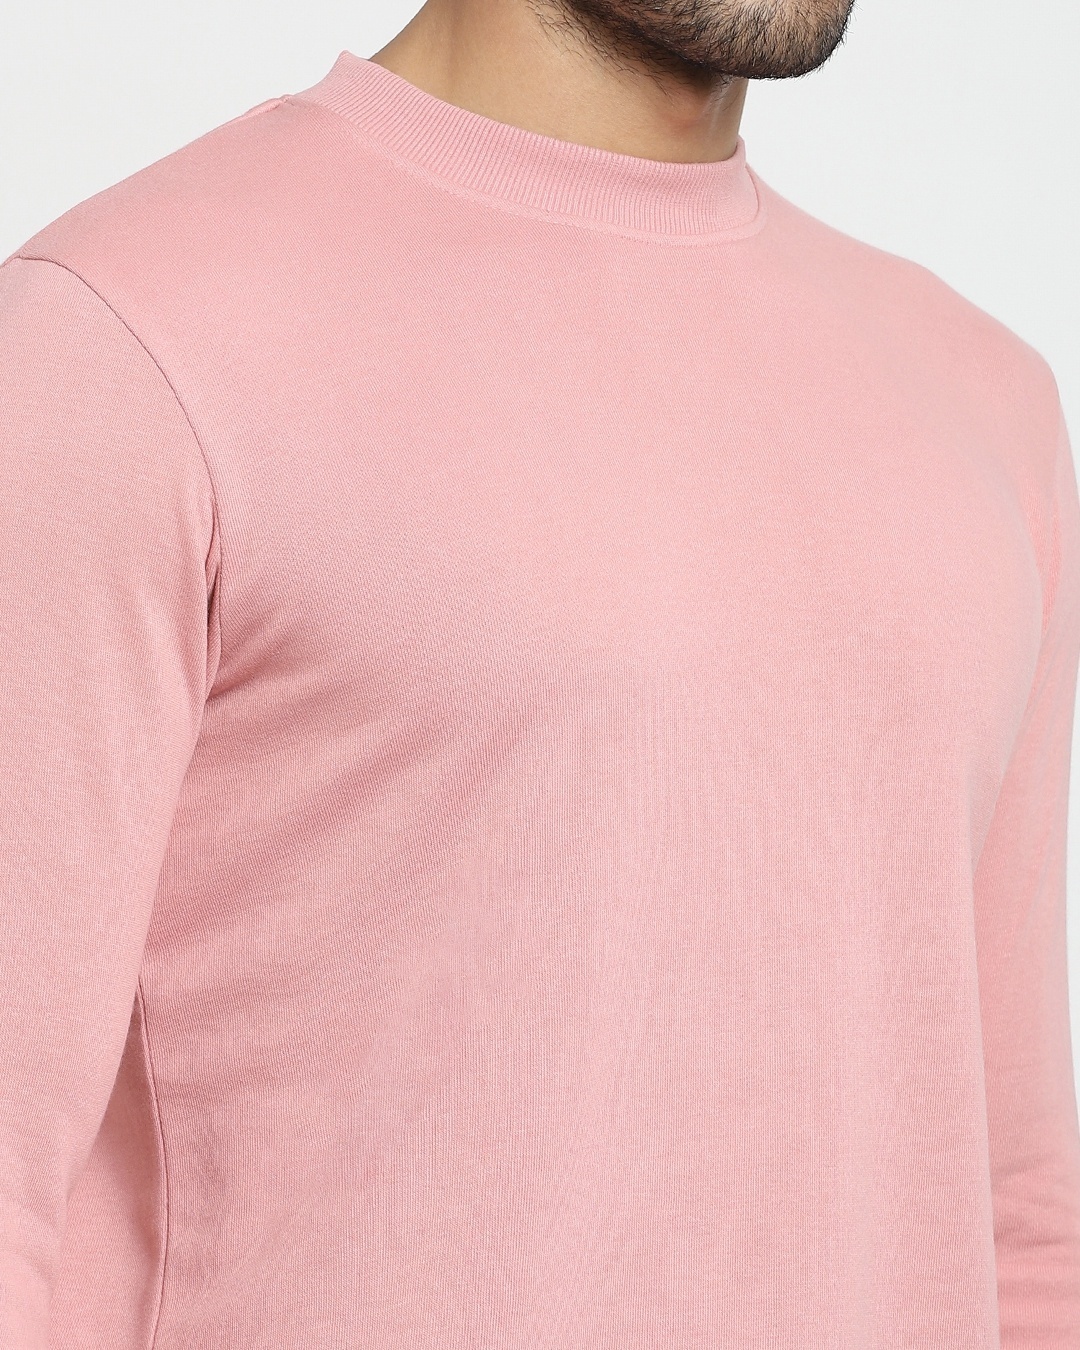 Shop Men's Pink Crew Neck Sweatshirt